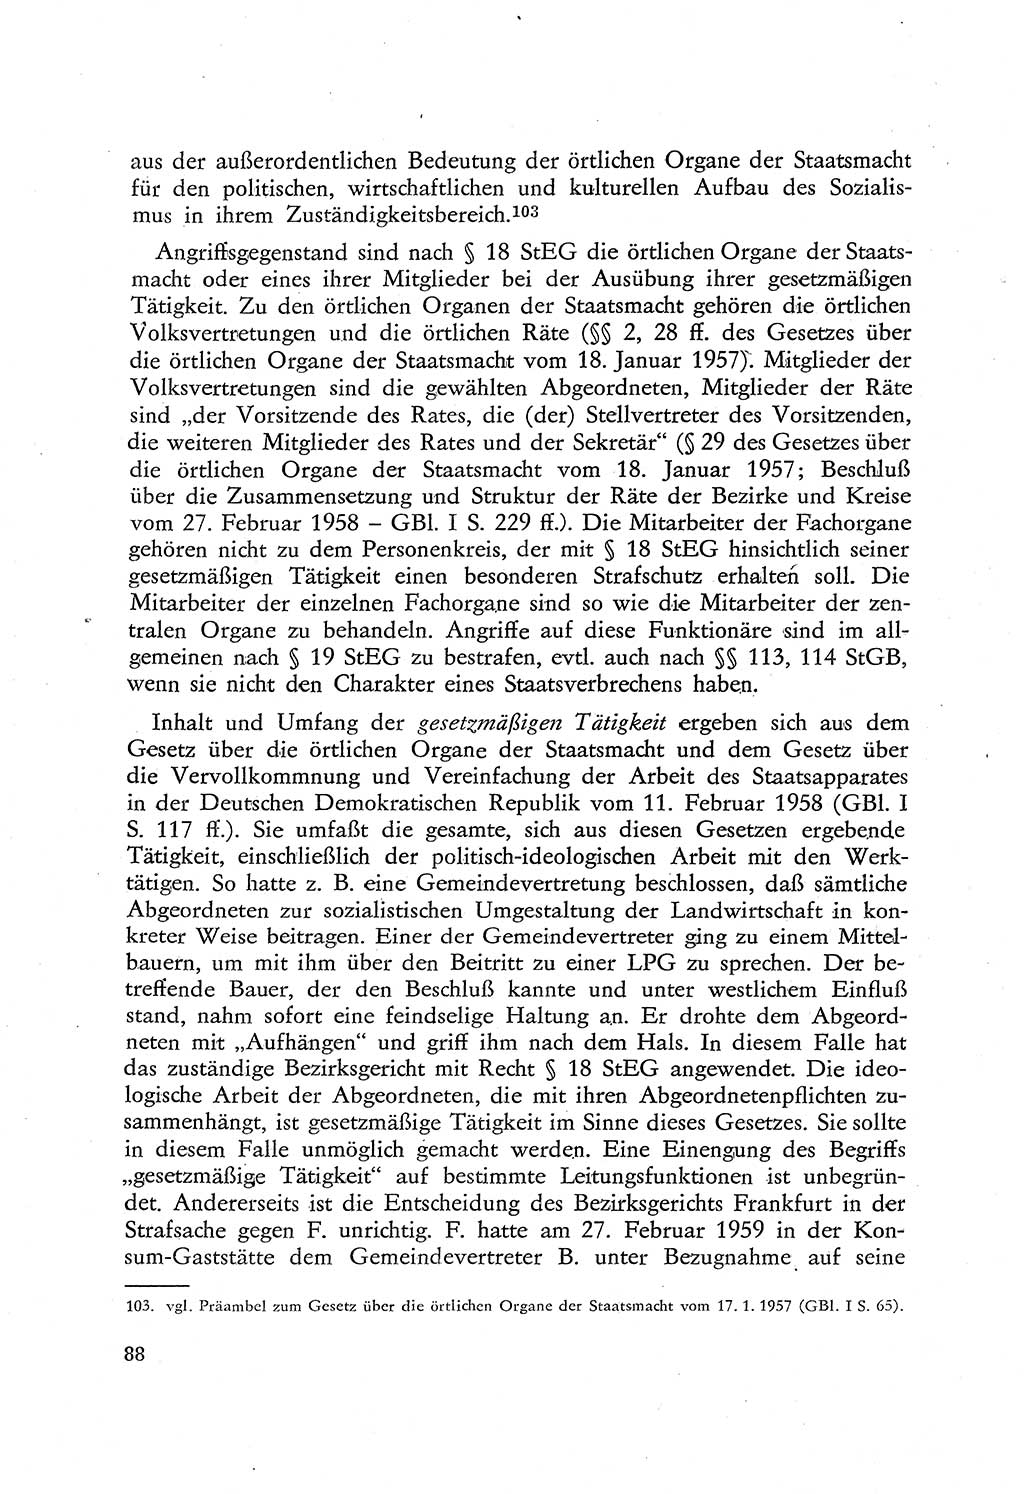 Beiträge zum Strafrecht [Deutsche Demokratische Republik (DDR)], Staatsverbrechen 1959, Seite 88 (Beitr. Strafr. DDR St.-Verbr. 1959, S. 88)